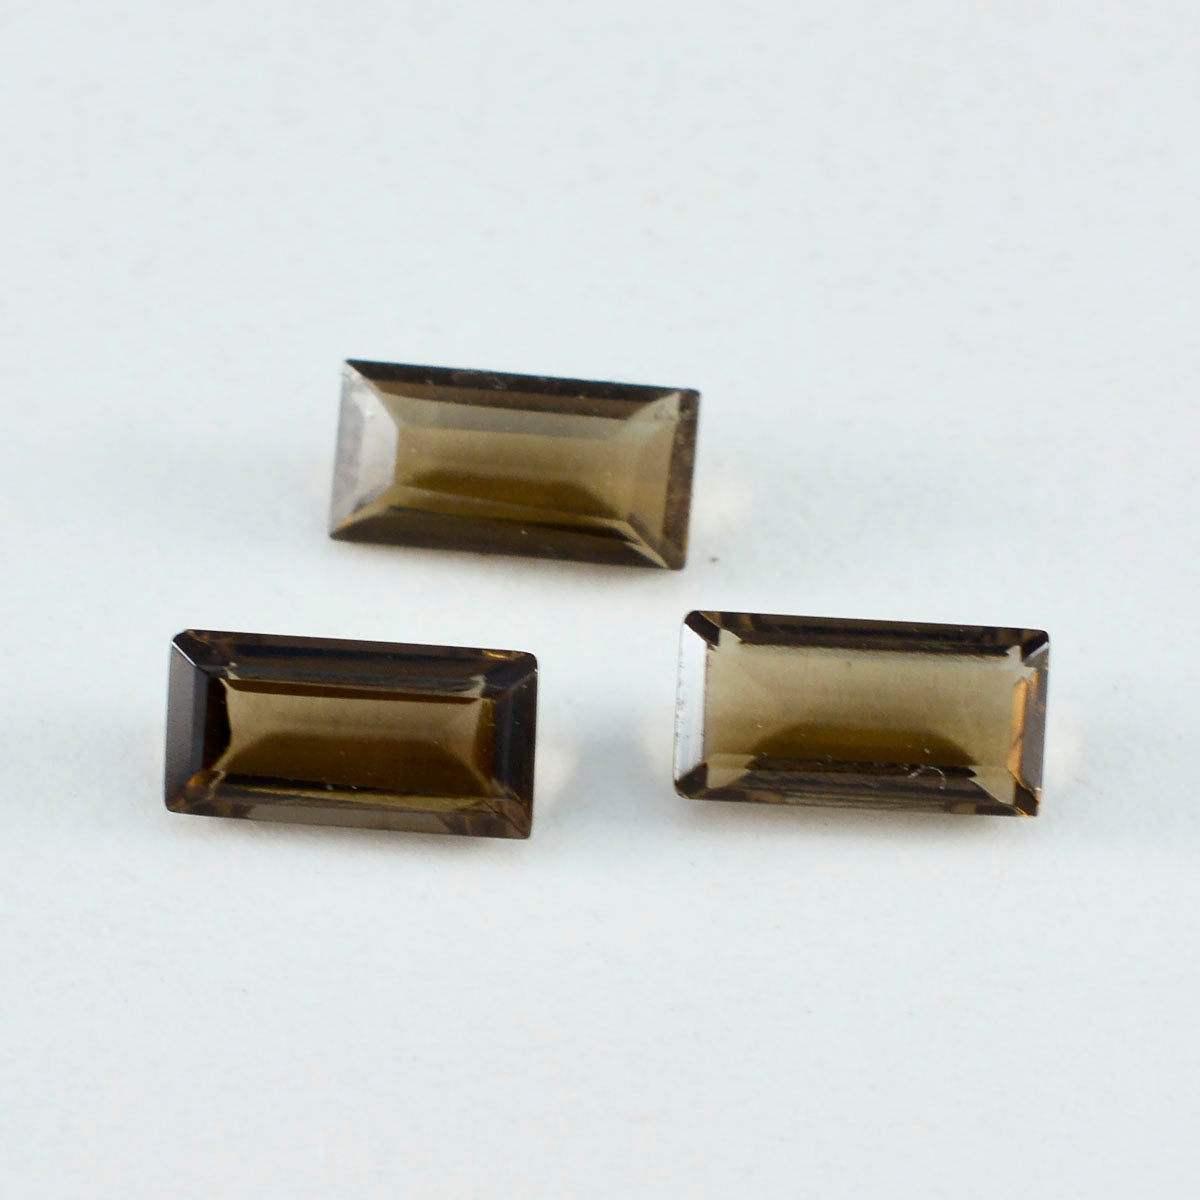 riyogems 1шт натуральный коричневый дымчатый кварц ограненный 7х14 мм форма багета А+1 камень качества